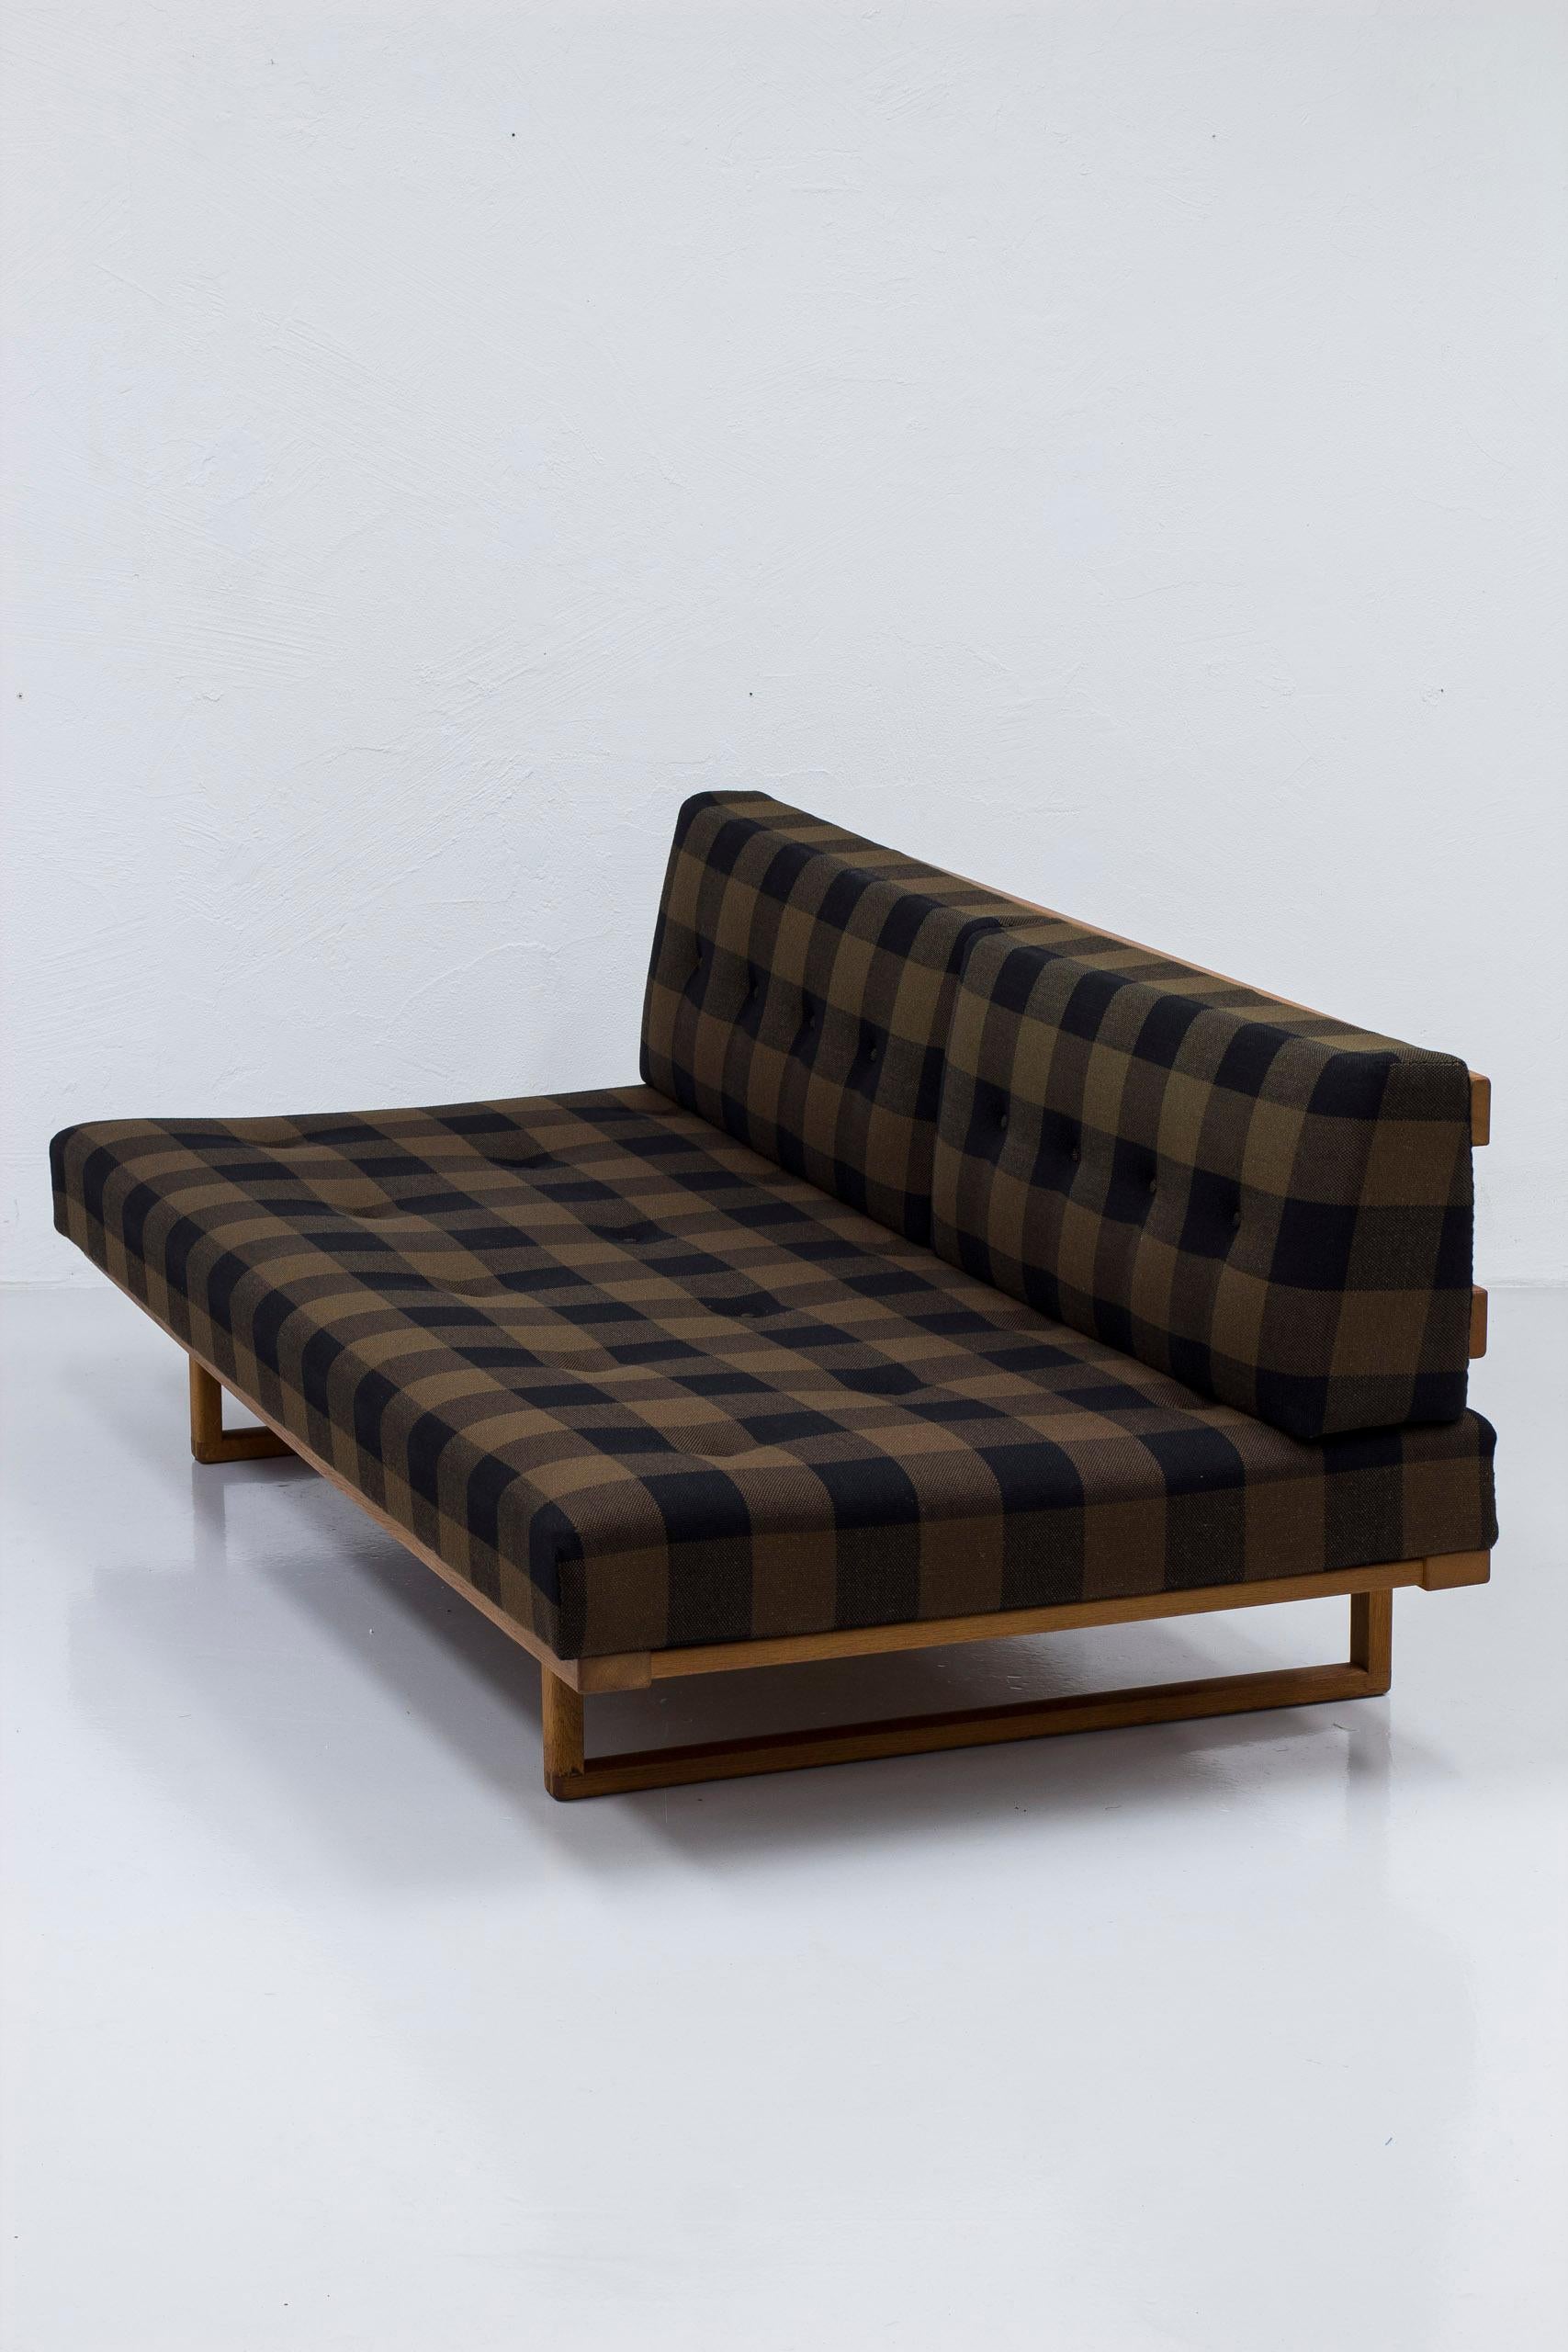 Canapé/lit de repos modèle 4312 conçu par Børge Mogensen et produit par Fredericia Stolefabrik au Danemark dans les années 1960. Cadre en chêne et frêne massif avec quincaillerie en laiton, matelas à ressorts et coussins d'origine. Le lit de jour a